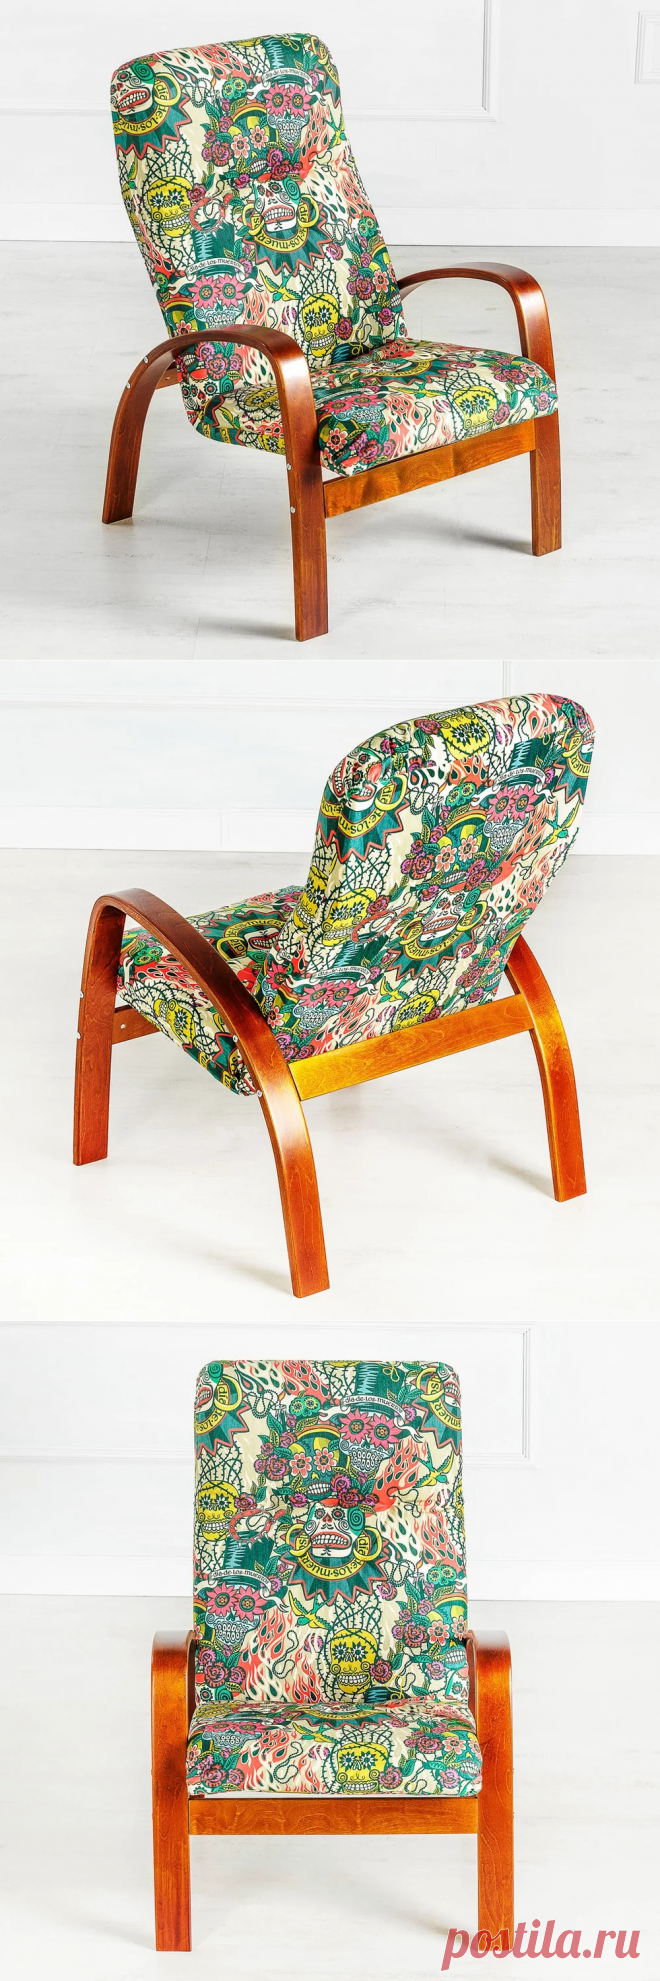 Купить дизайнерское мягкое кресло Диа Де Лос Муэртос от Comanci | Mellroot